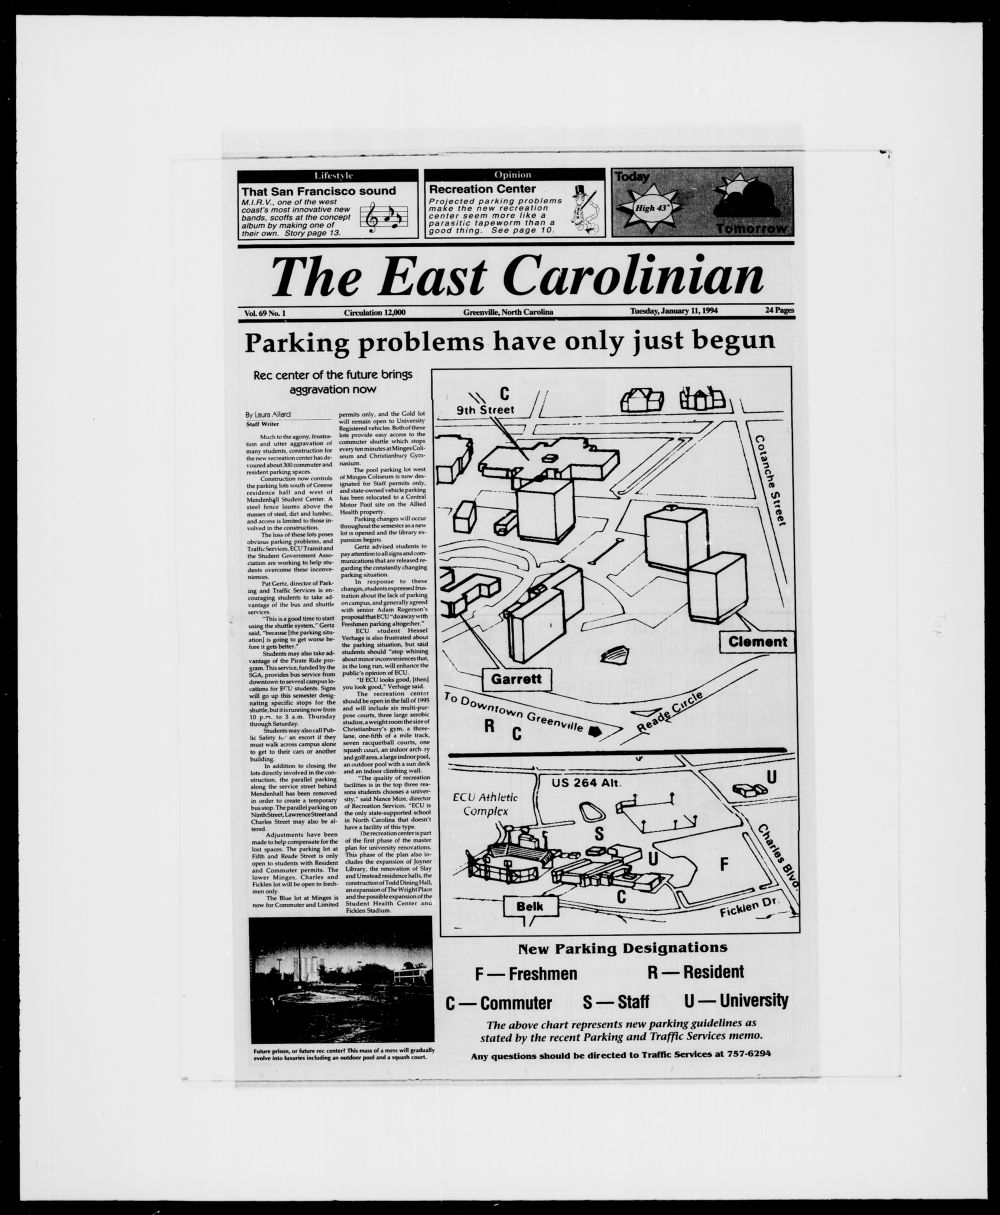 The East Carolinian, January 11, 1994 photo